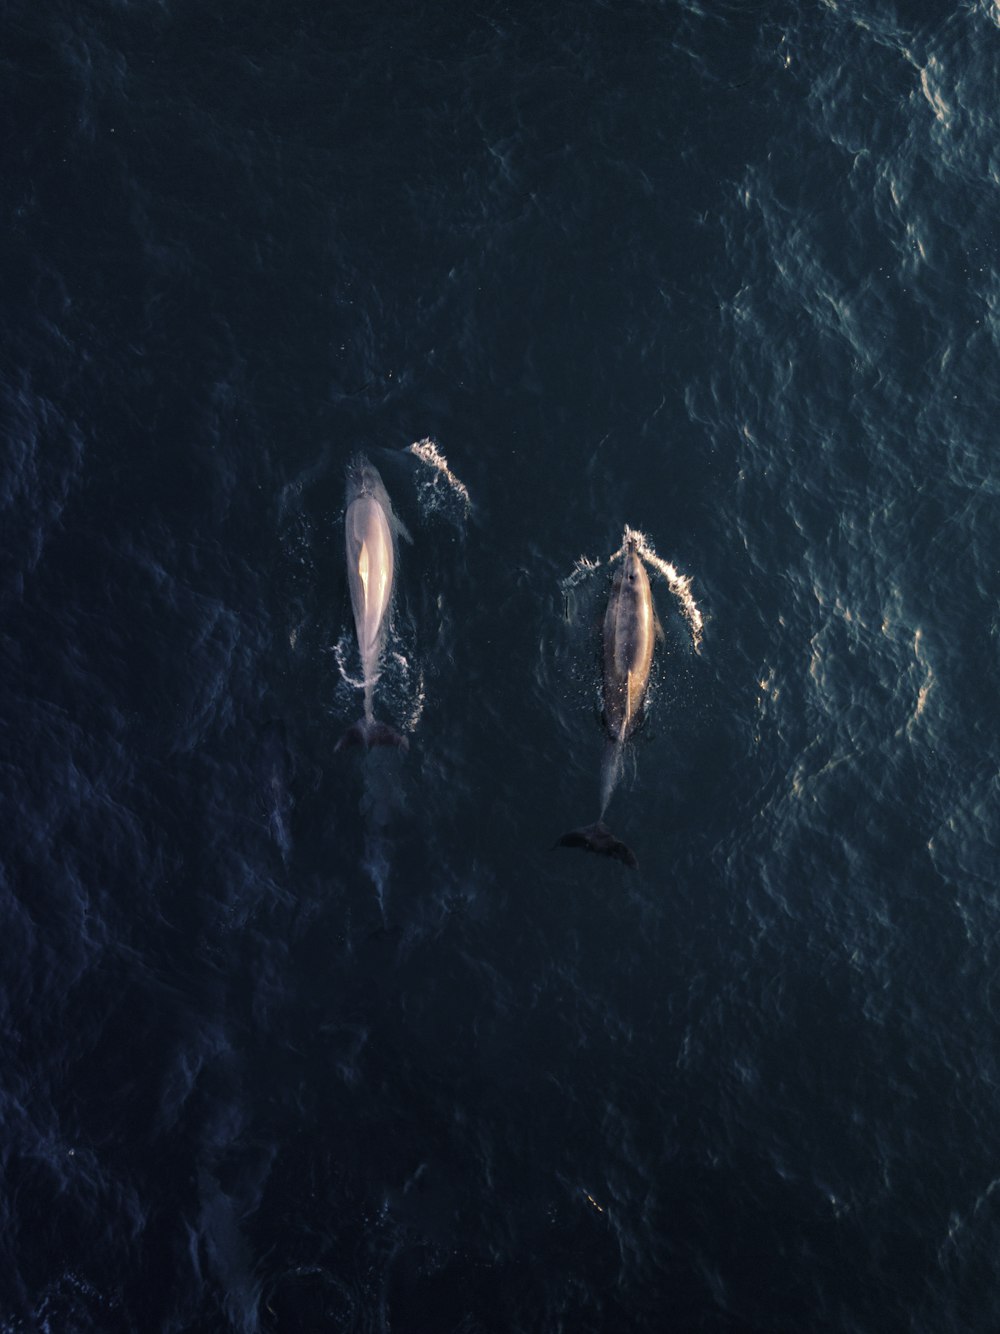 Photographie de vue aérienne de deux dauphins dans l’eau